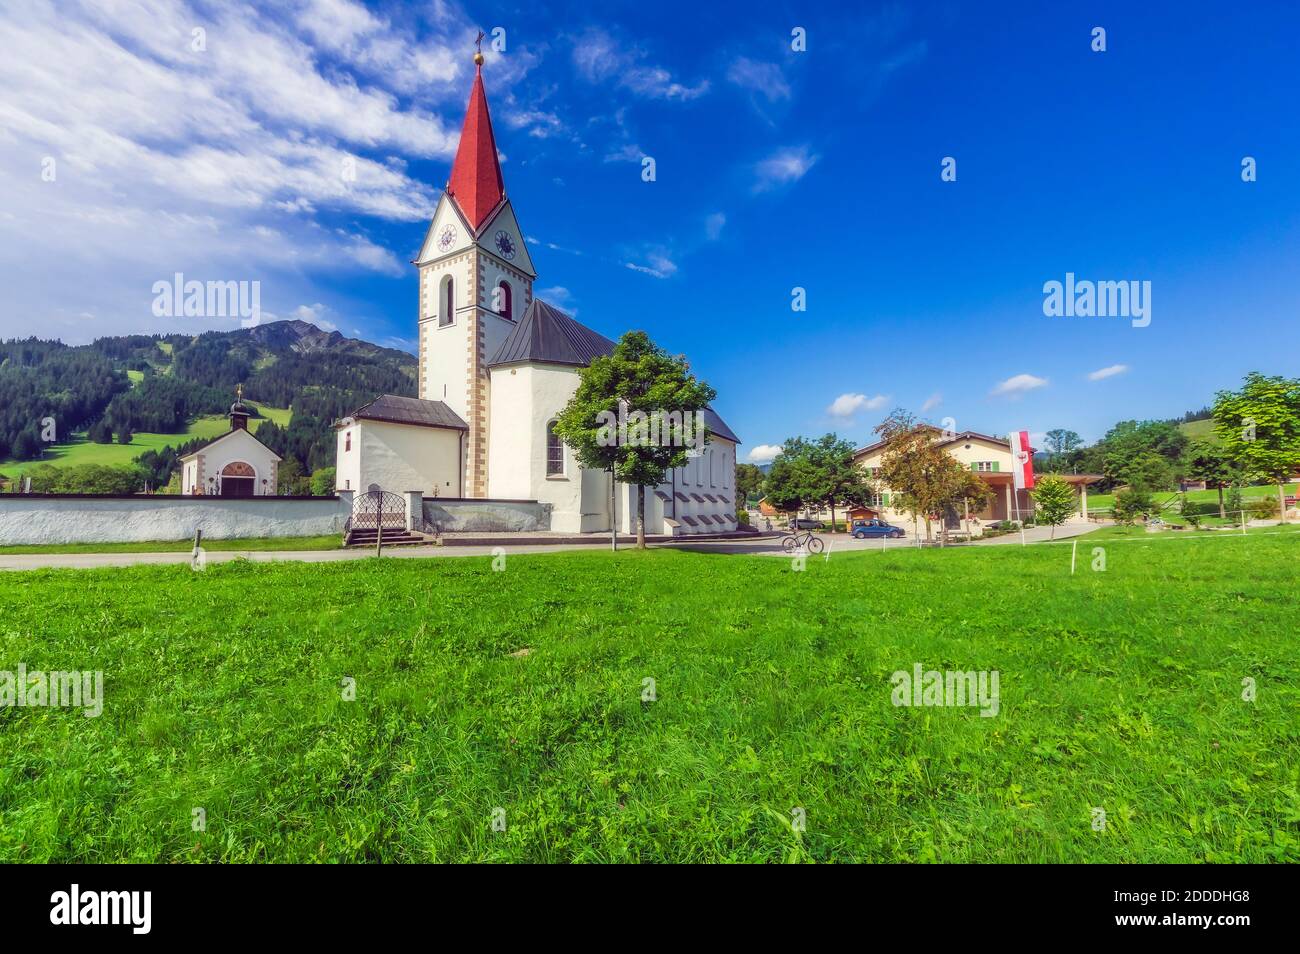 Austria, Tyrol, Schattwald, Historical Pfarrkirche Schattwald church in summer Stock Photo